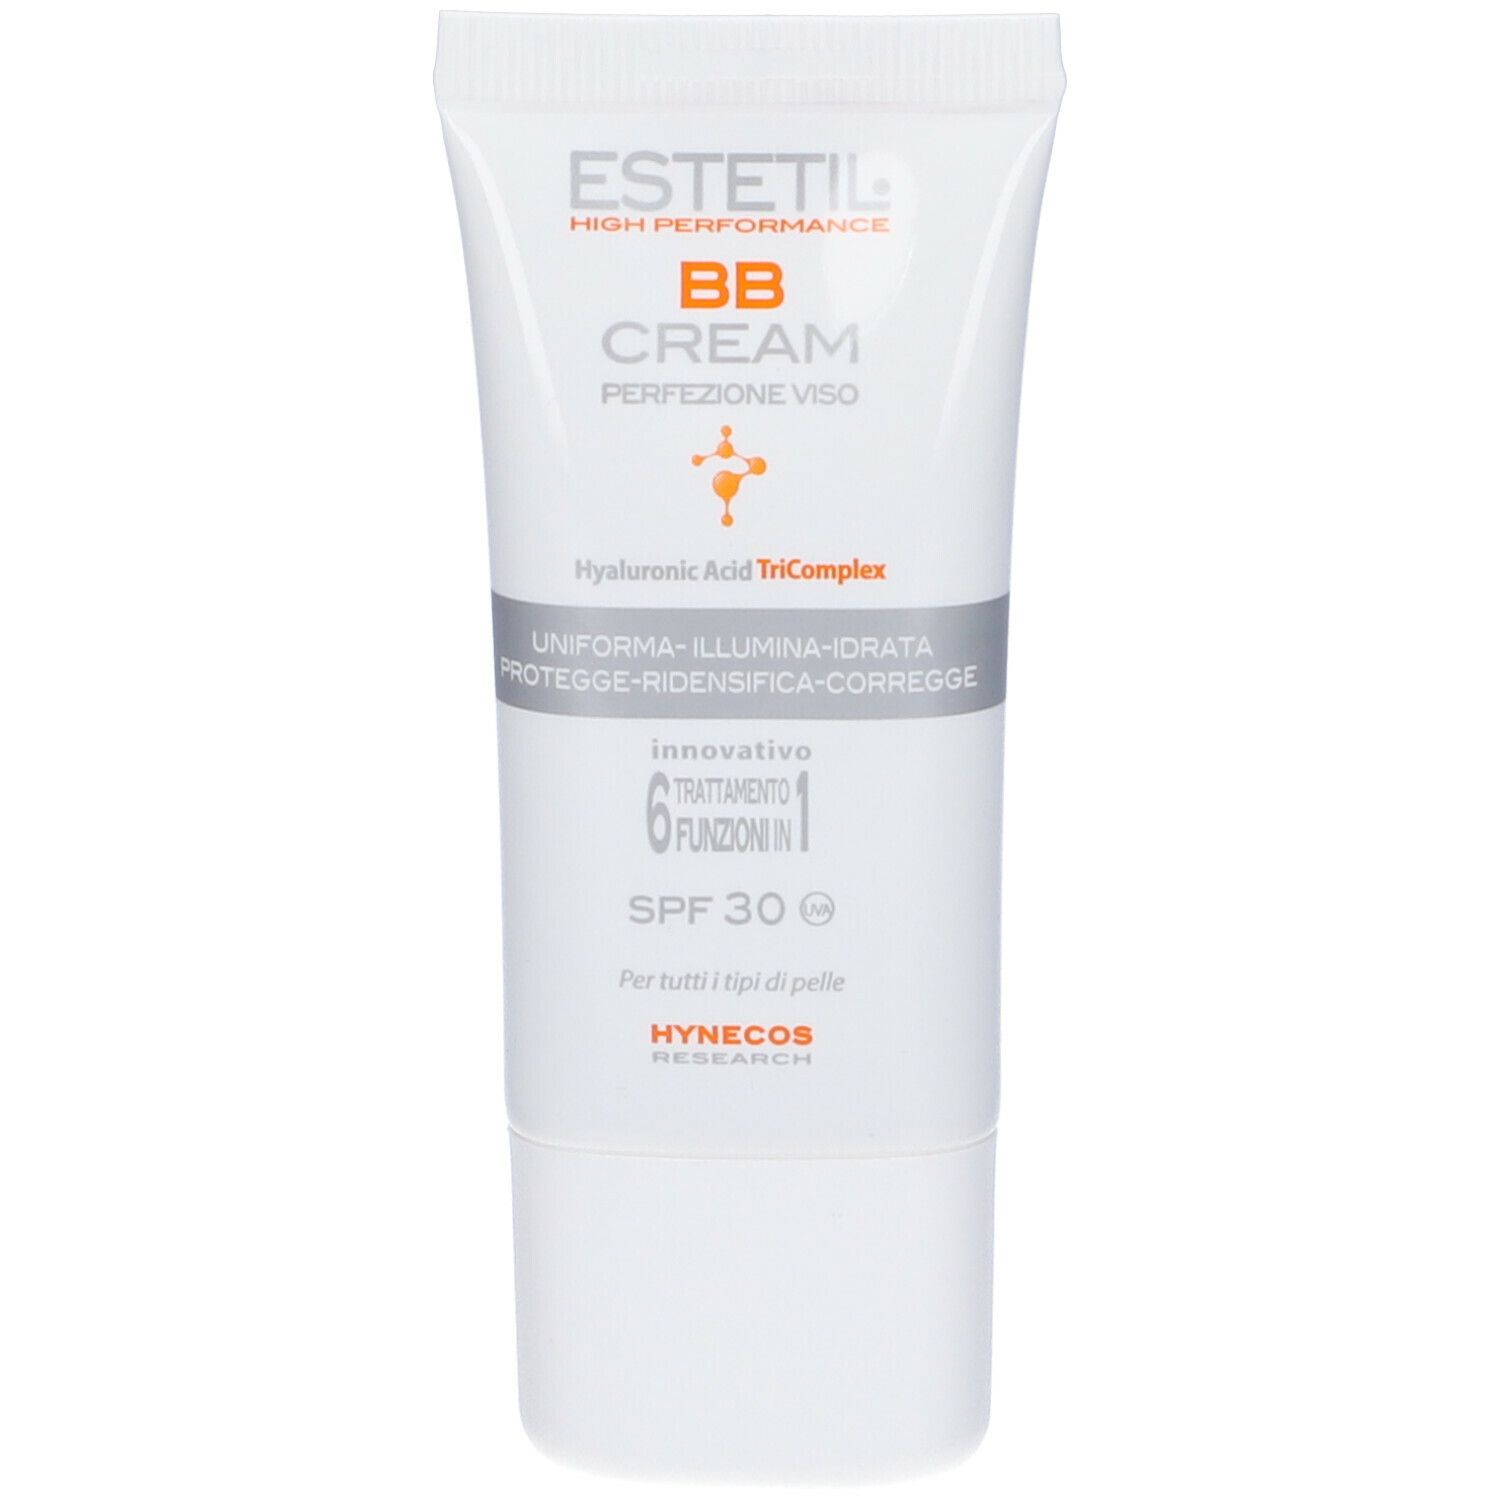 Image of Estetil Bb Cream Perfezione Viso Spf30 01.1 Hynecos Research 30ml